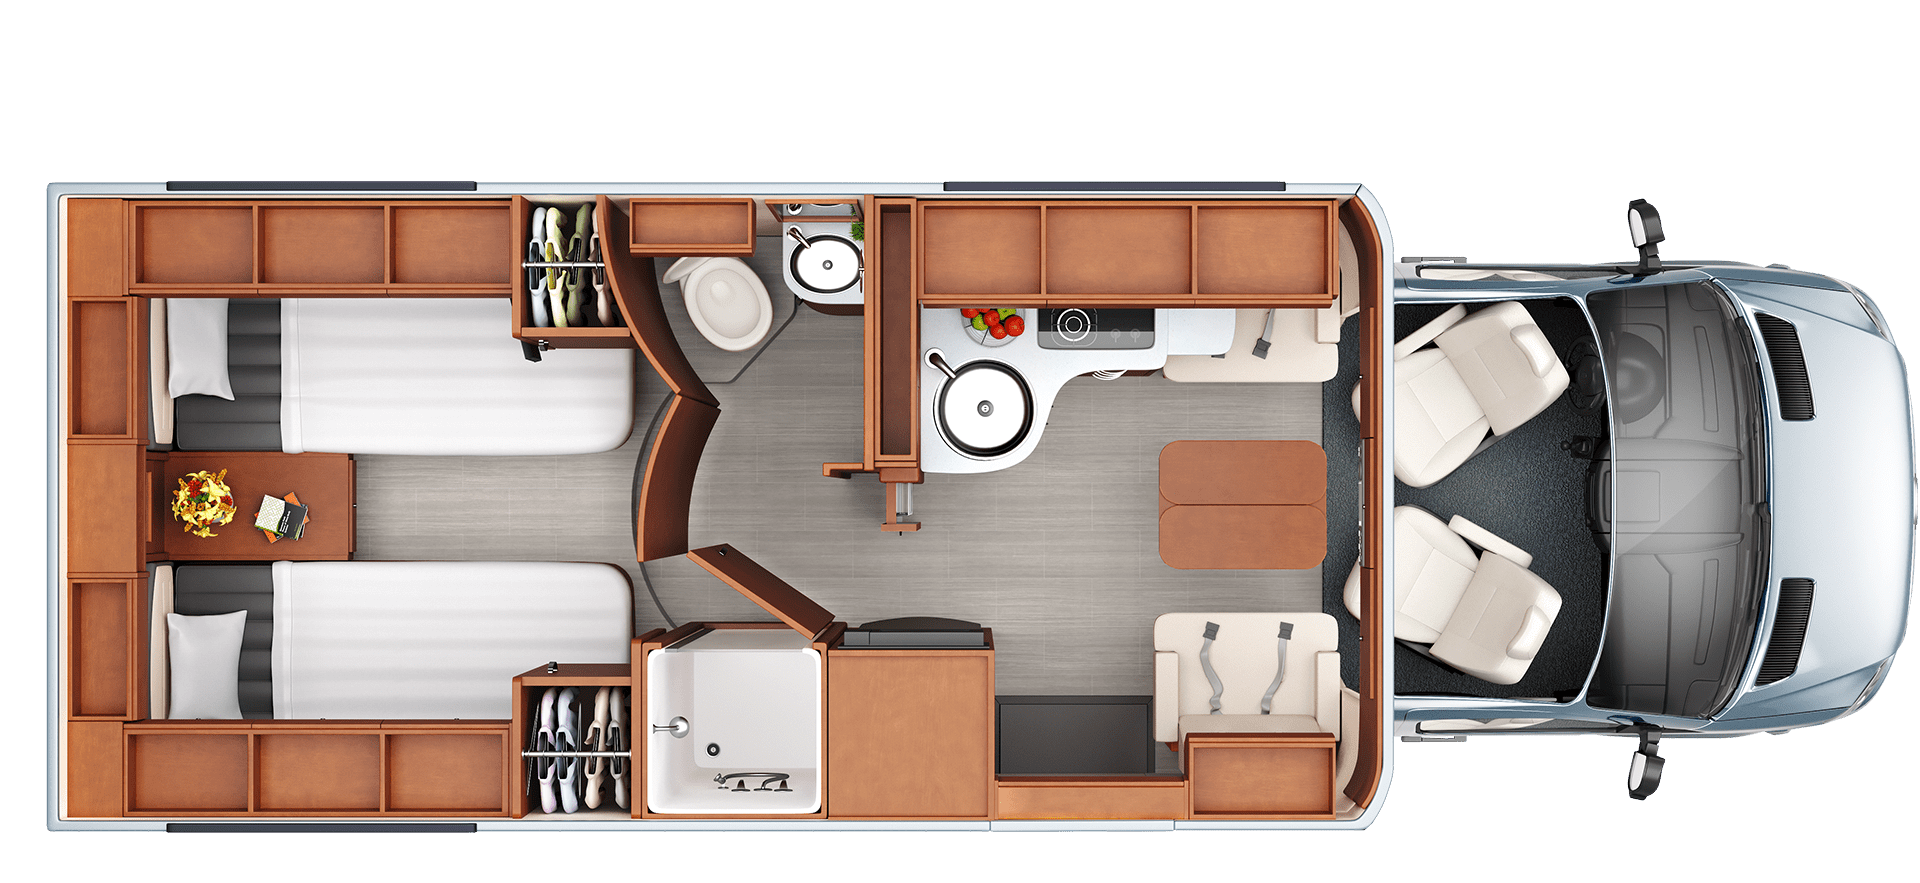 Unity Floorplans Leisure travel vans, Travel van